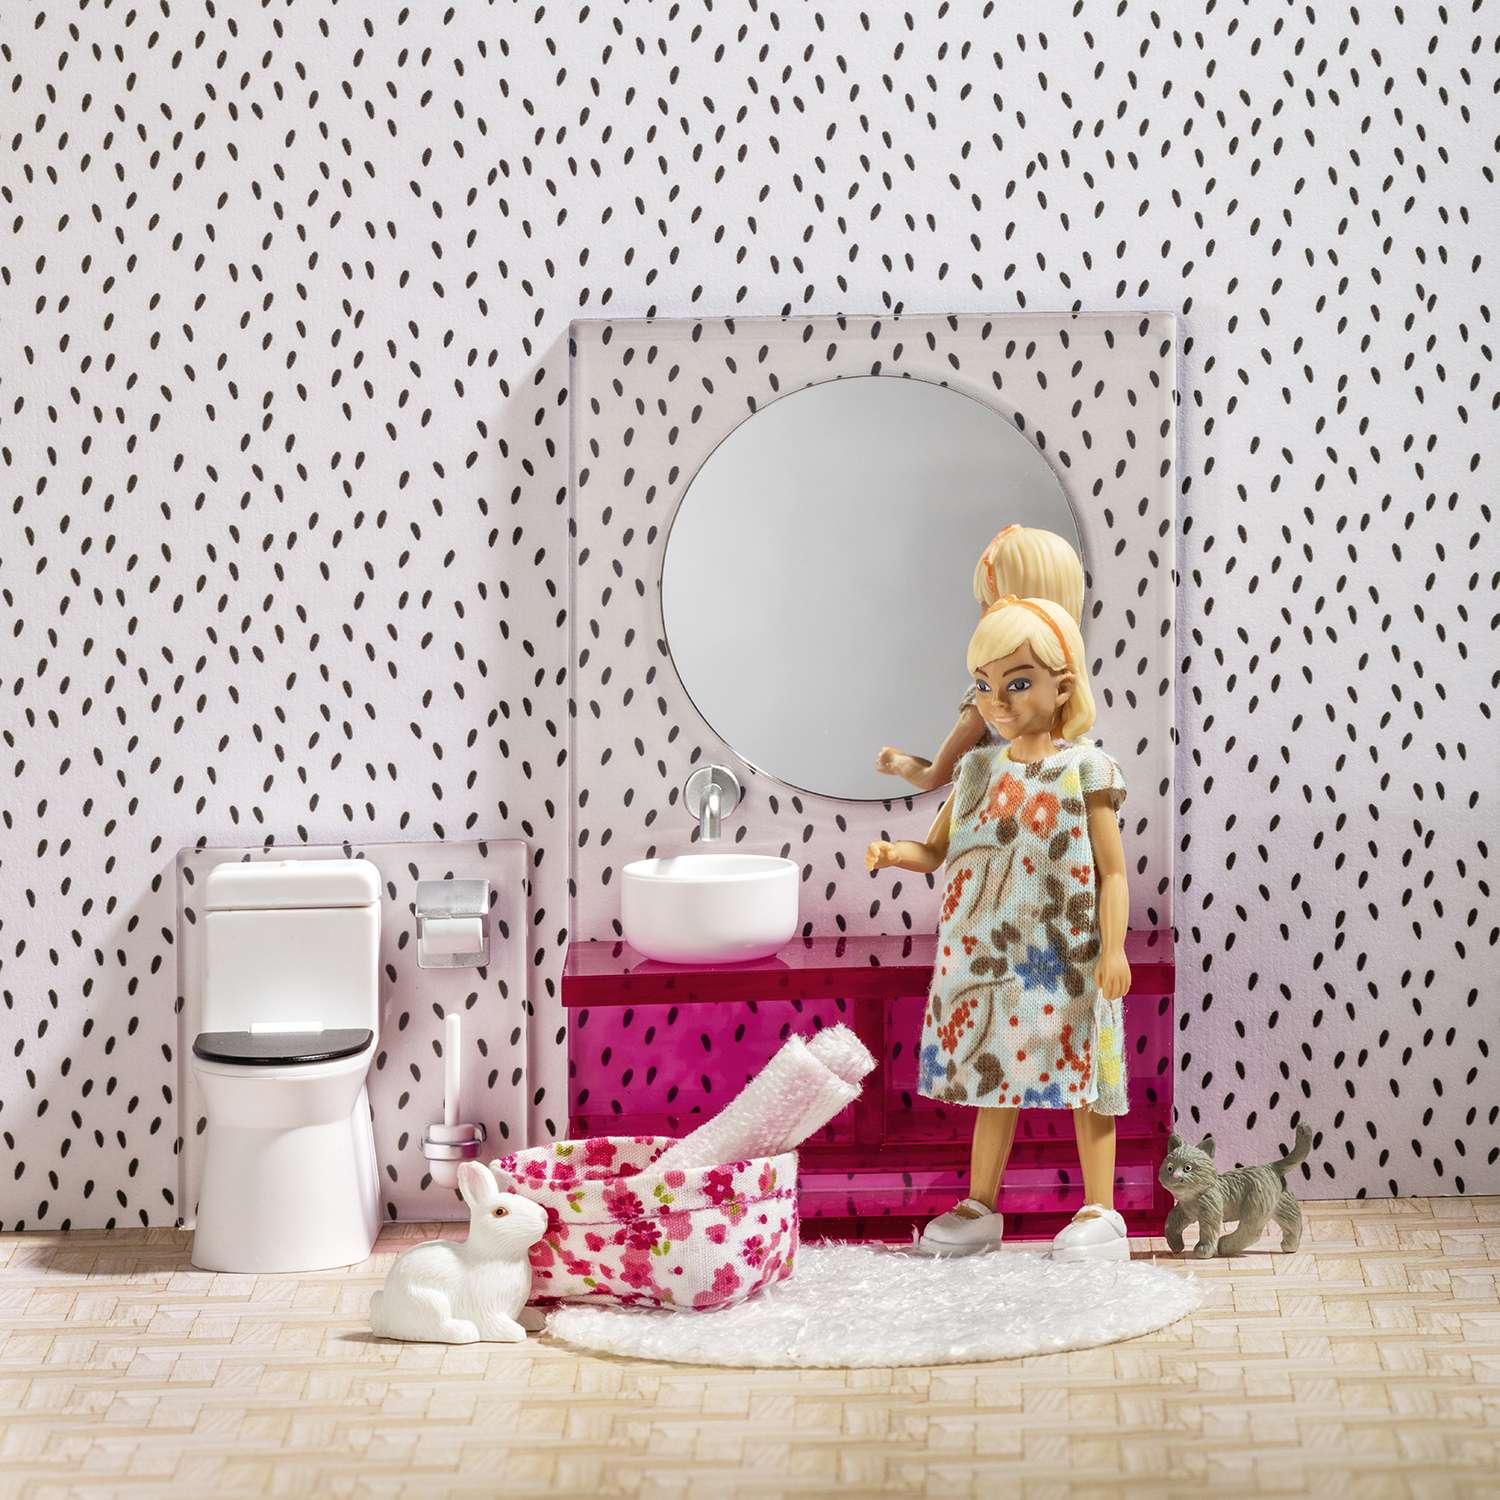 Обустройство ванной комнаты для кукол своими руками